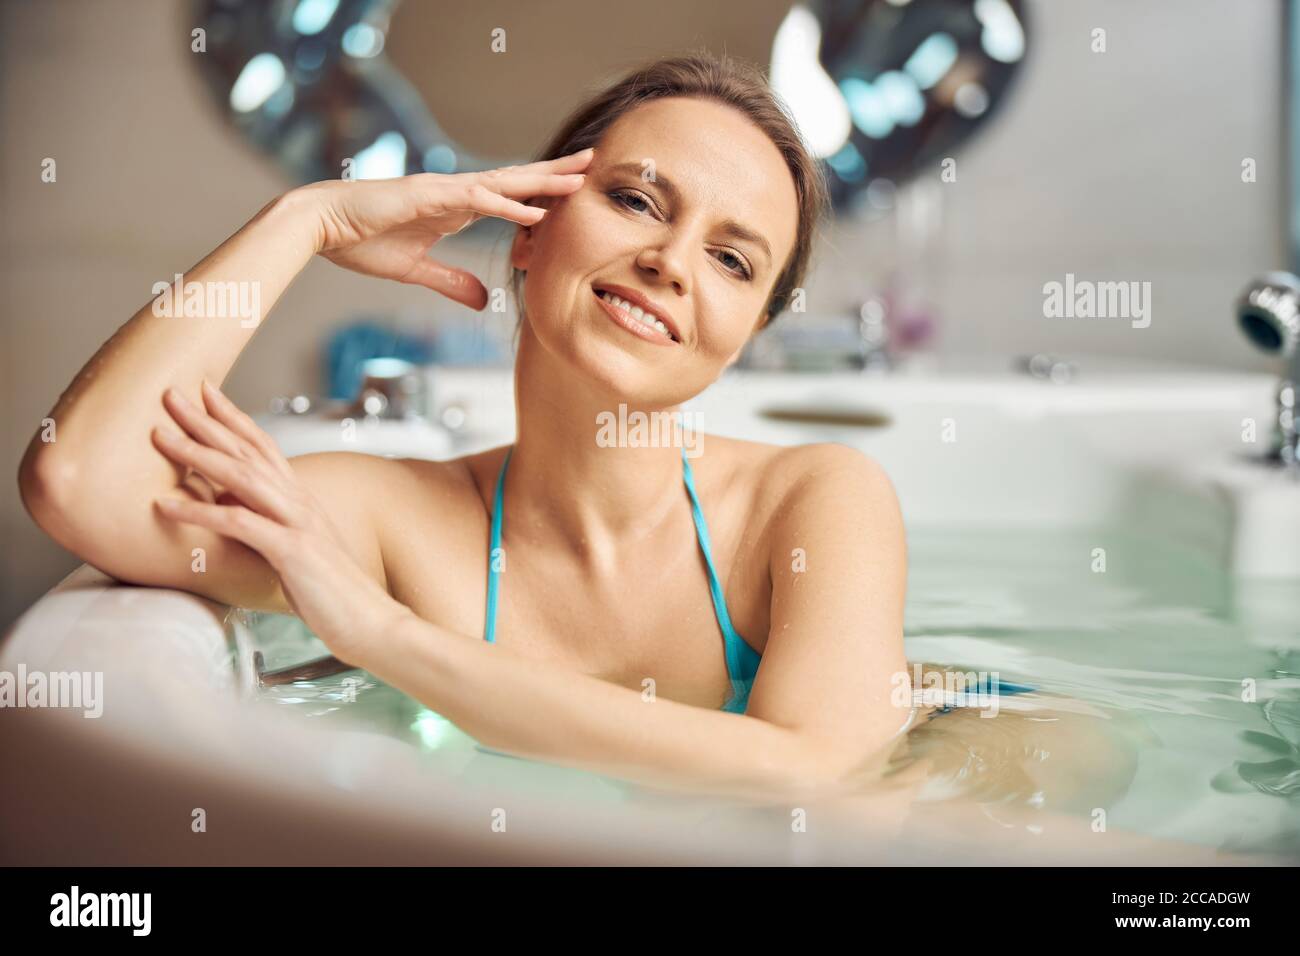 Beautiful woman relaxing in a hot bath Stock Photo